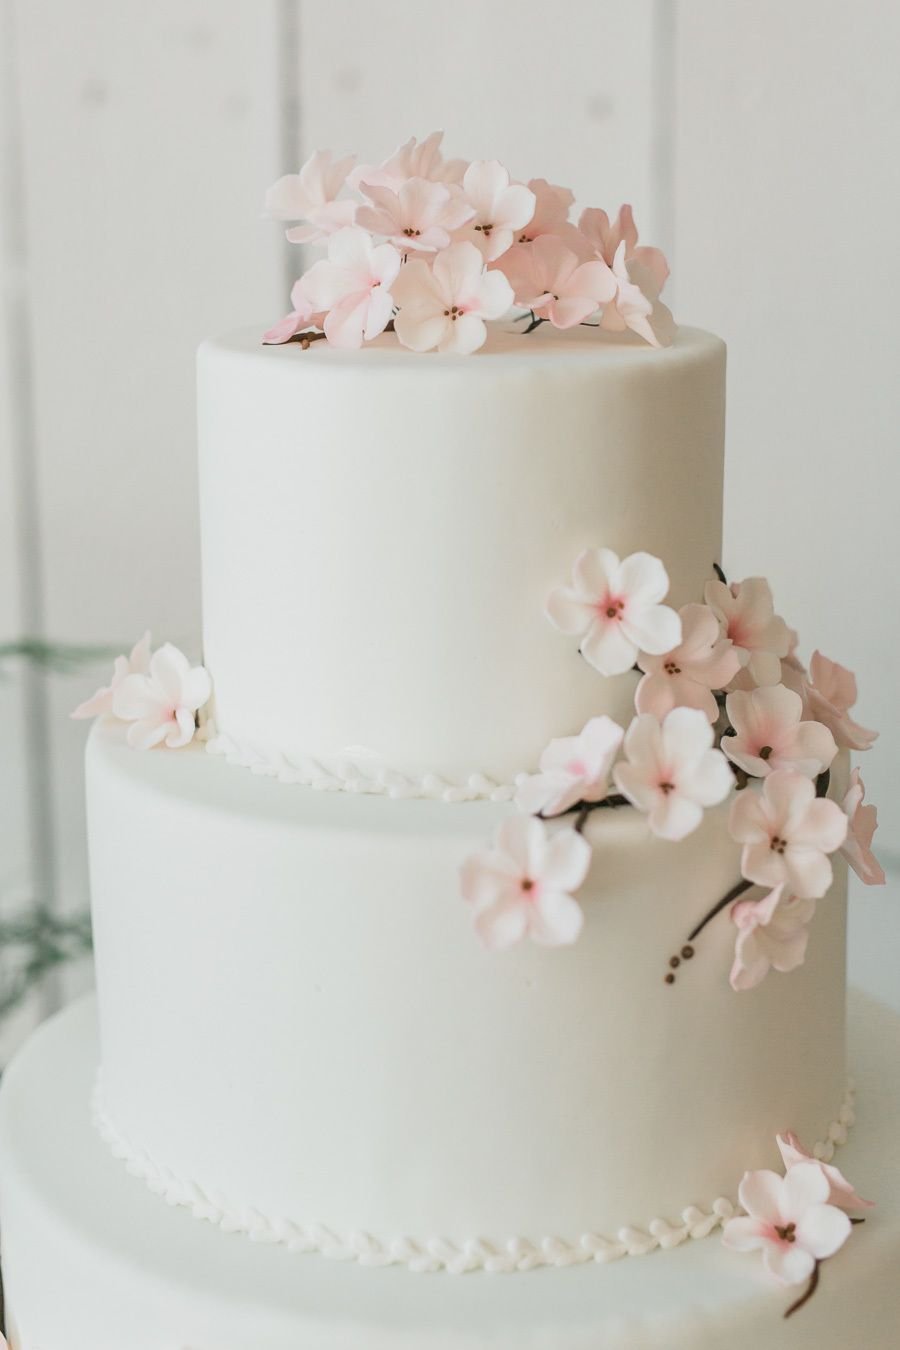 Свадебный торт с инициалами